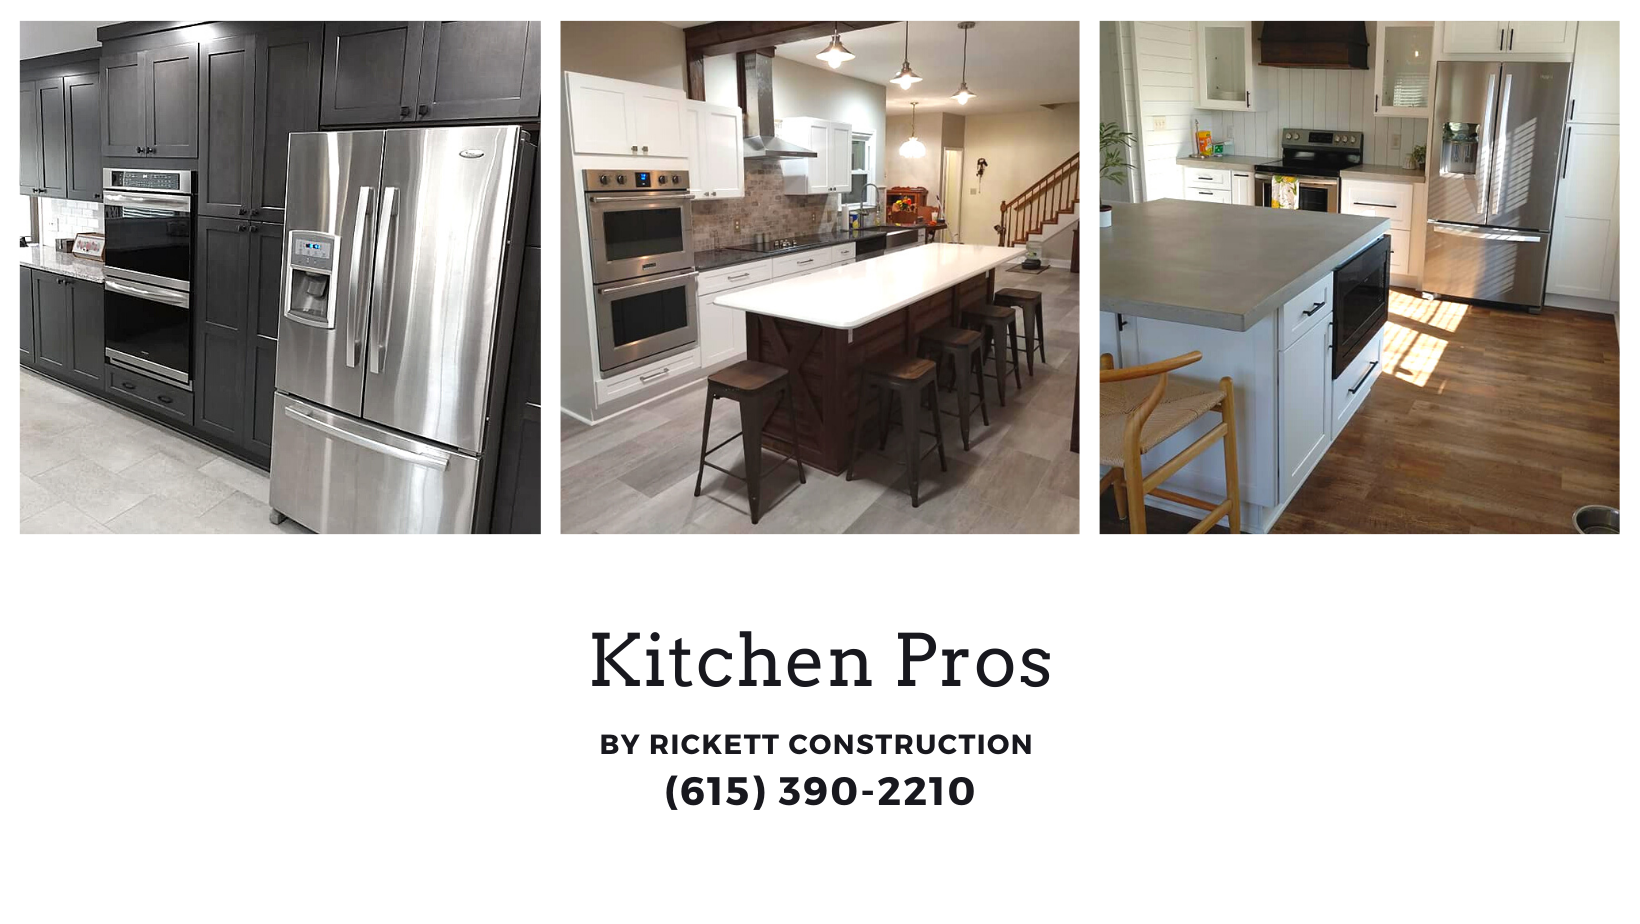 Kitchen Pros by Rickett Construction 308 Hayes St, Hartsville Tennessee 37074